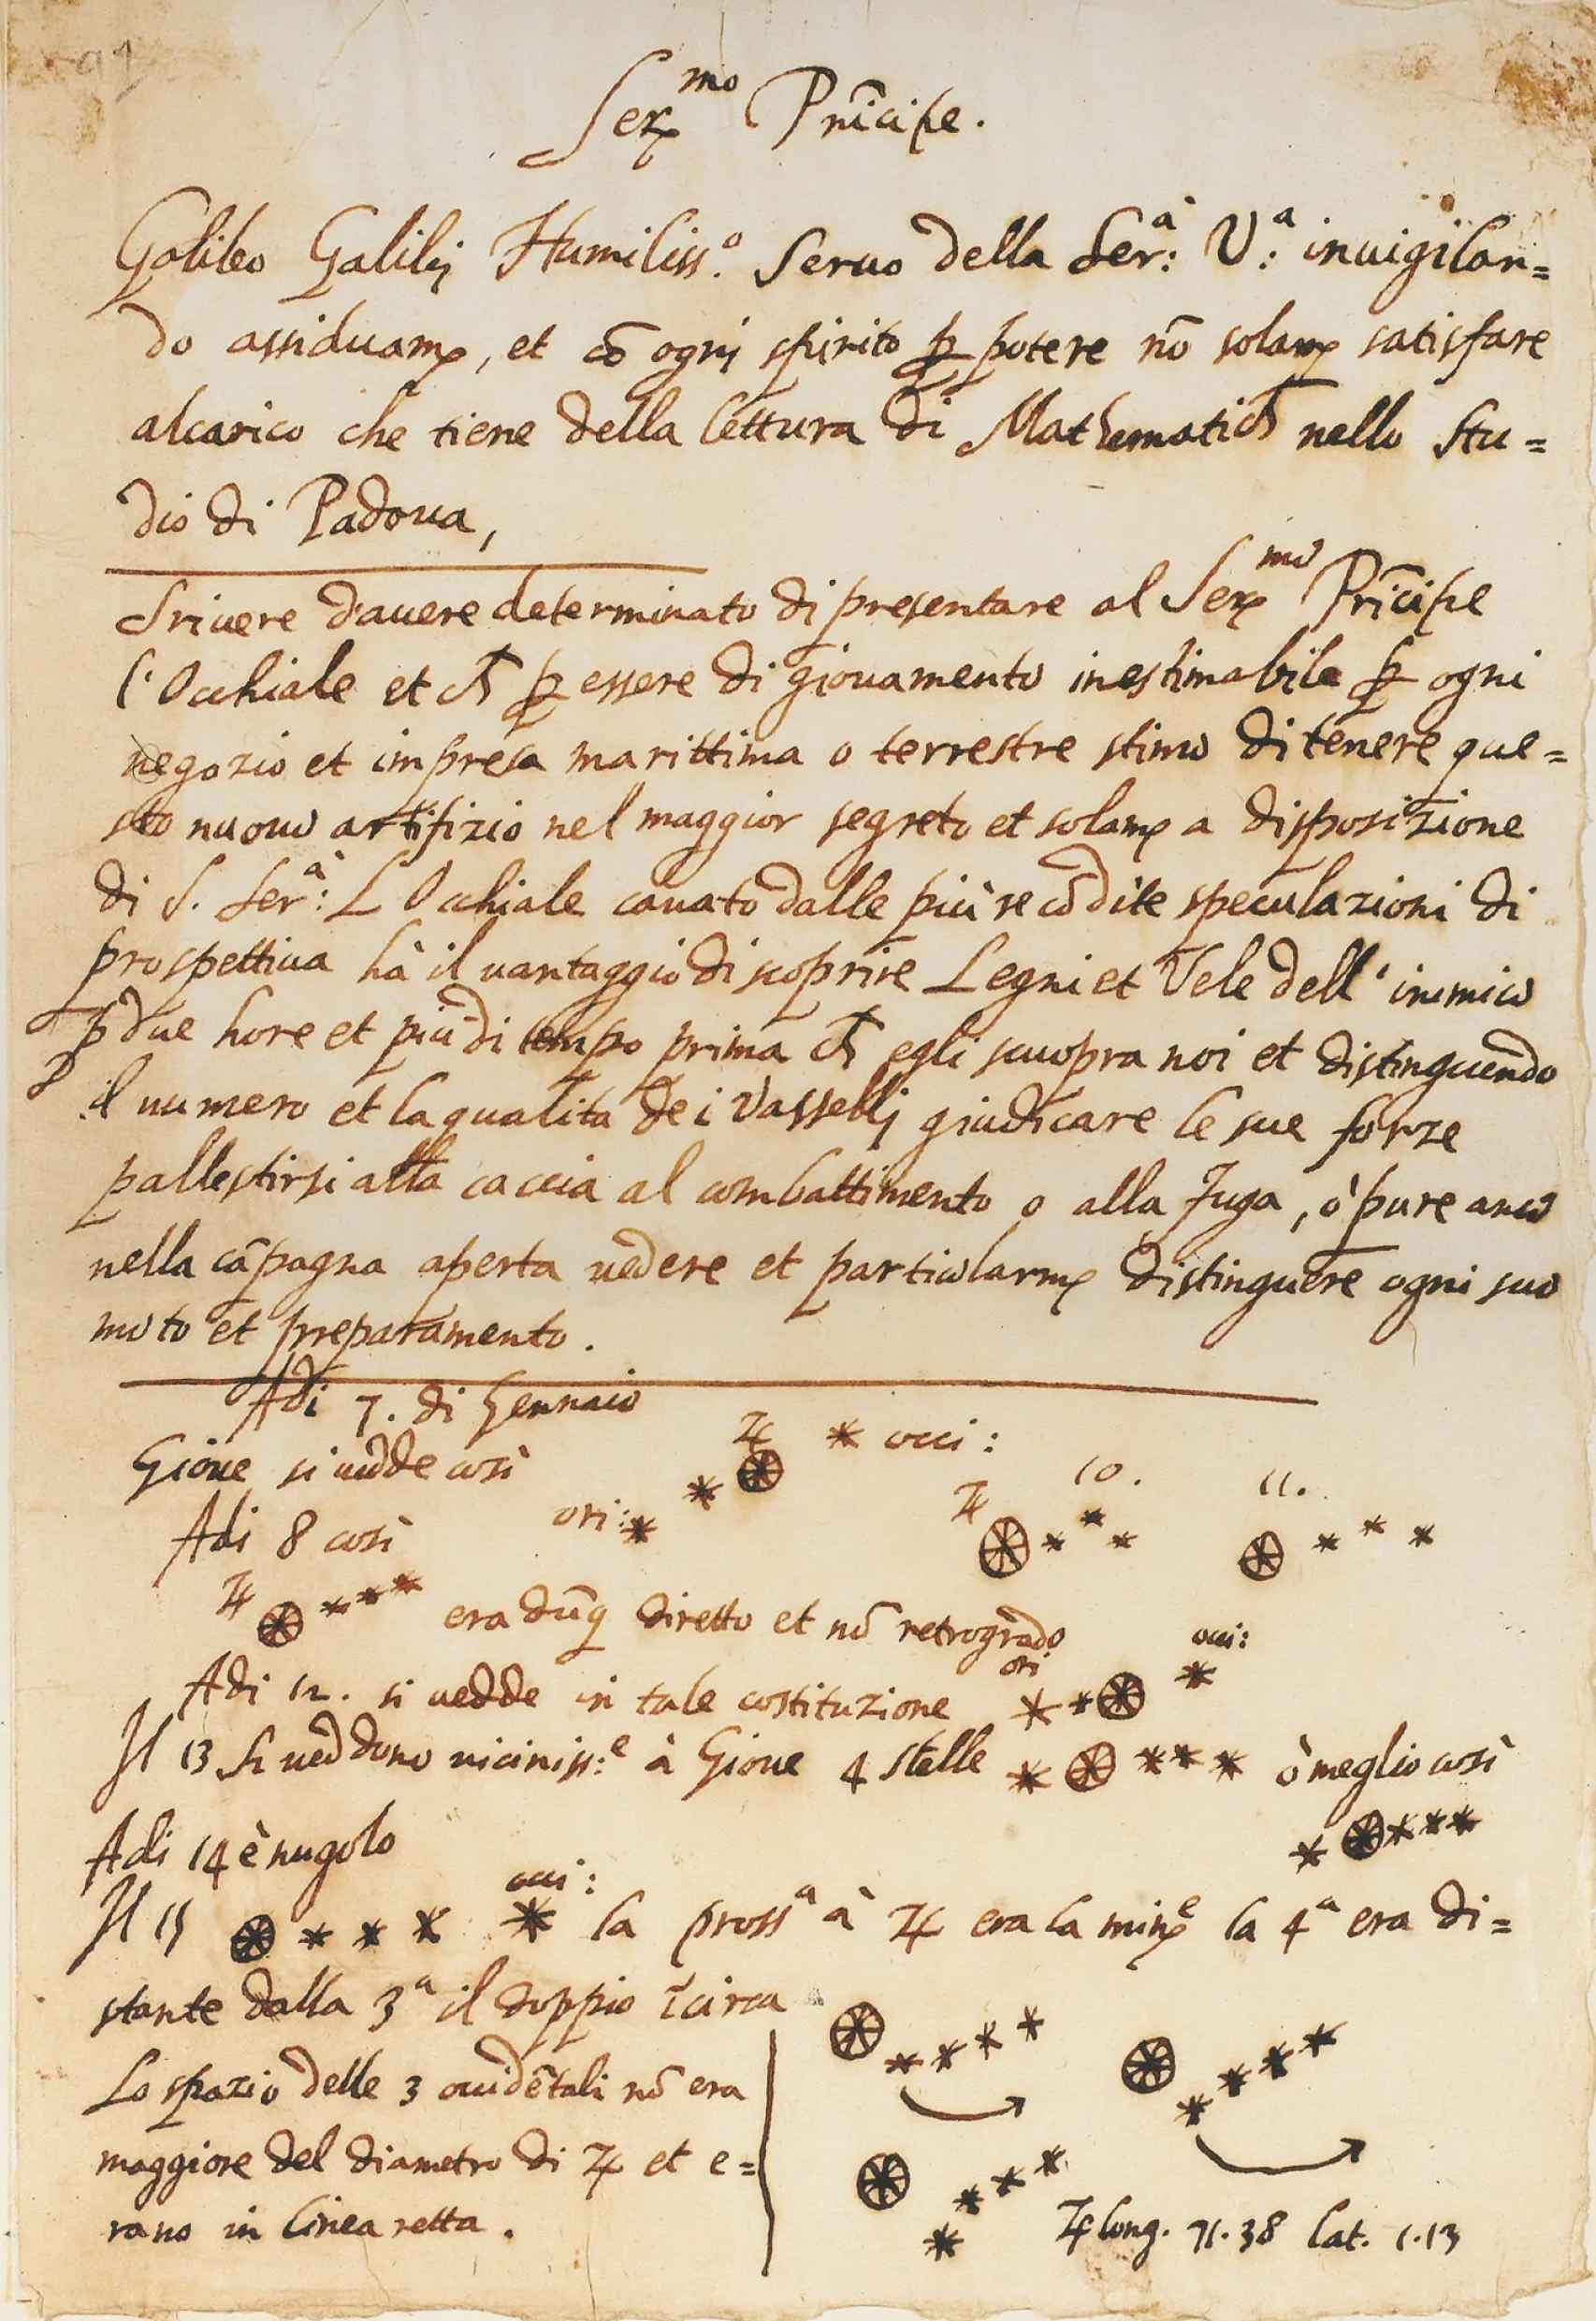 Reproducción íntegra del documento de Galileo revelado como falso. Foto: Universidad de Michigan